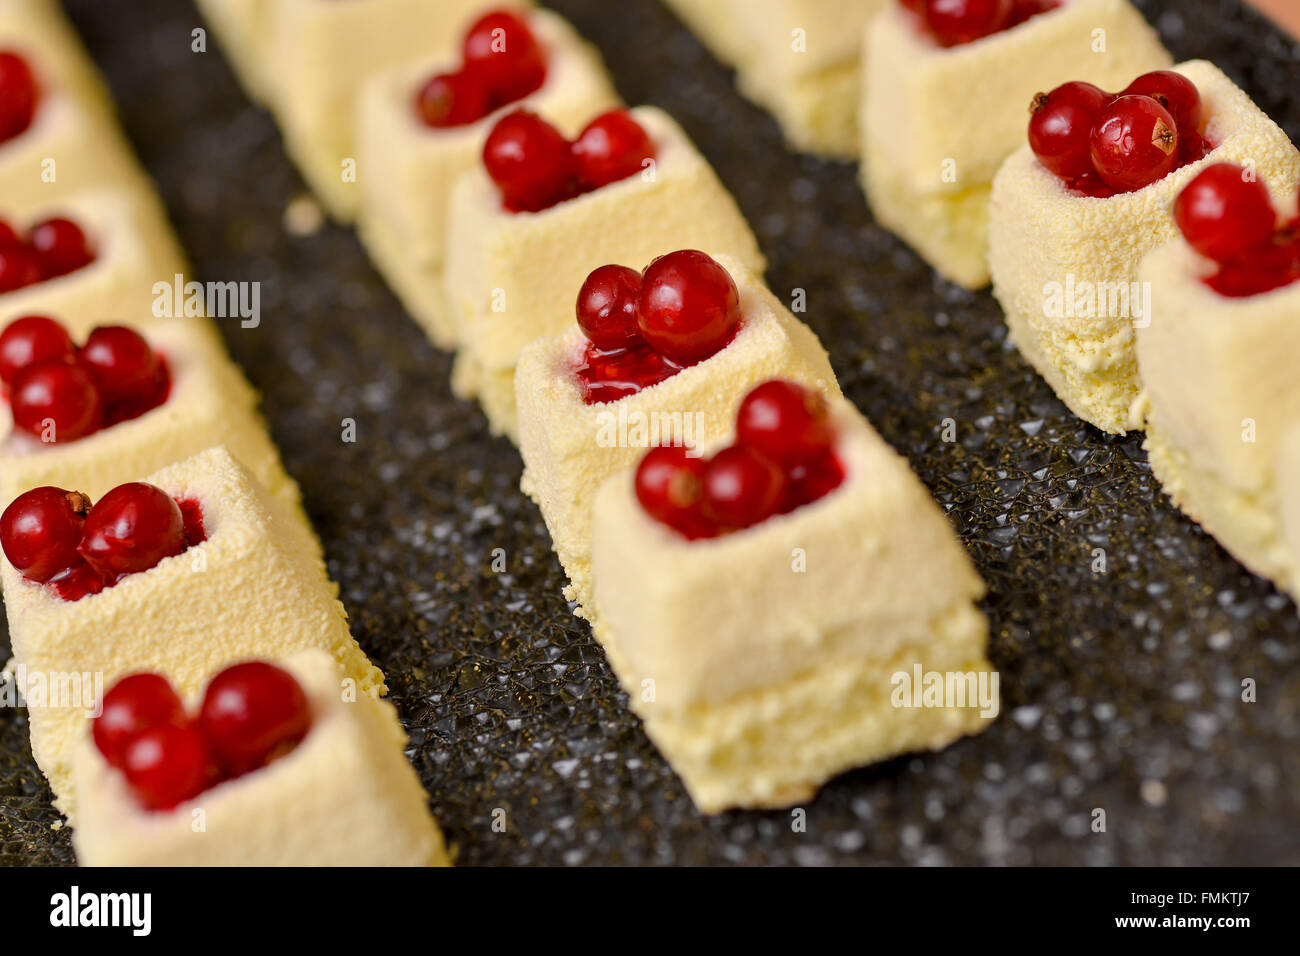 La vaniglia torta con frutta rossa sulla parte superiore Foto Stock